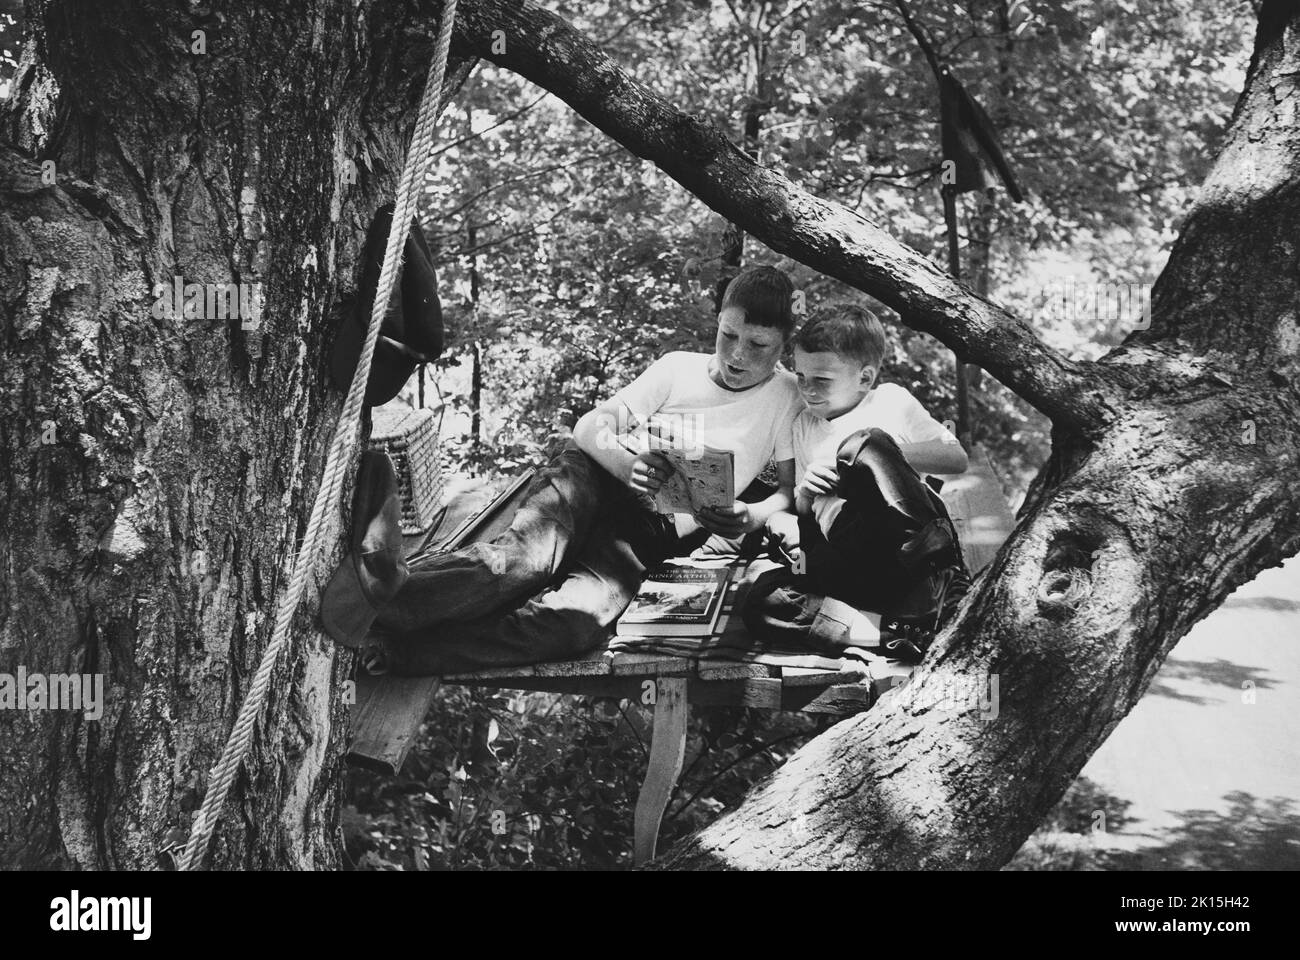 Deux frères partagent la joie de lire un livre de bande dessinée tout en pendant dans leur fort d'arbre.Une copie papier du roi Arthur peut être vue sur le plancher du fort. Banque D'Images